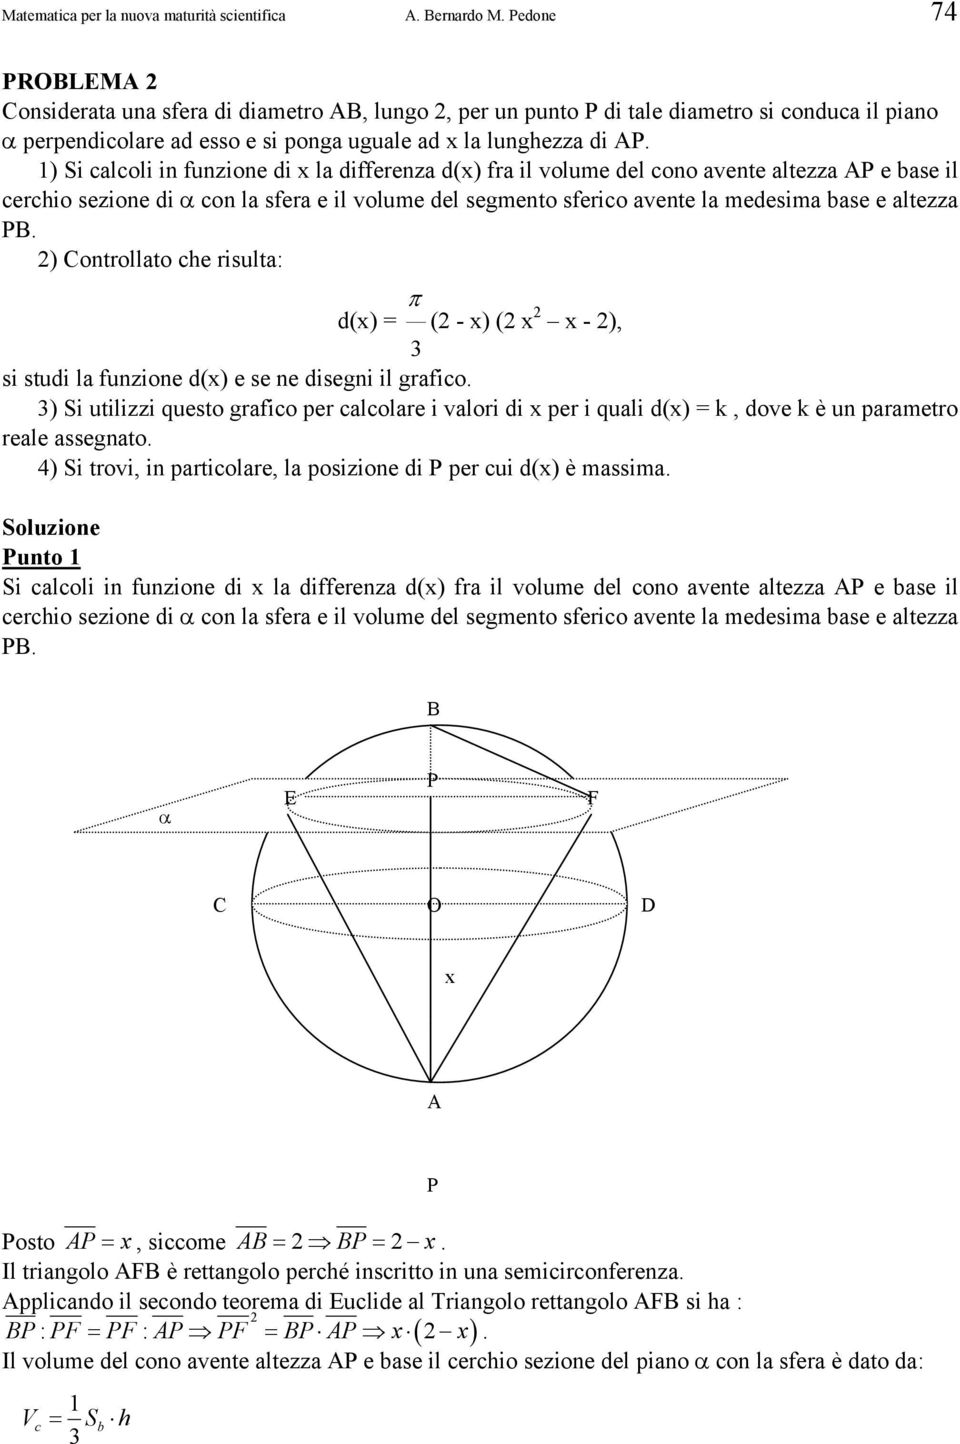 1) Si calcoli in funzione di la differenza d() fra il volume del cono avente altezza AP e base il cerchio sezione di α con la sfera e il volume del segmento sferico avente la medesima base e altezza